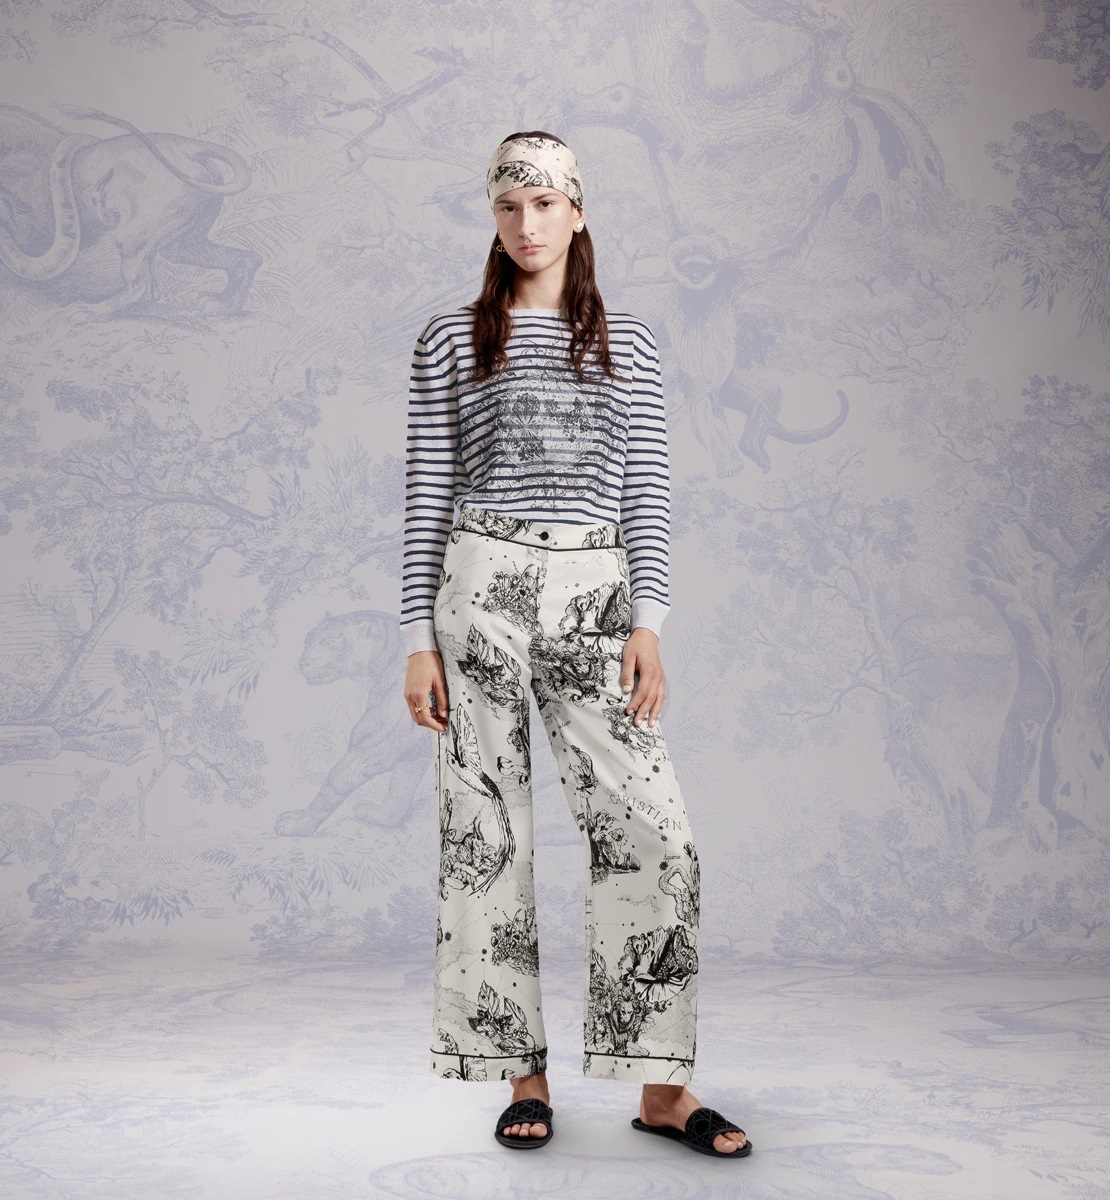 Dior presenta su primera colección de ropa para estar en casa - Infobae